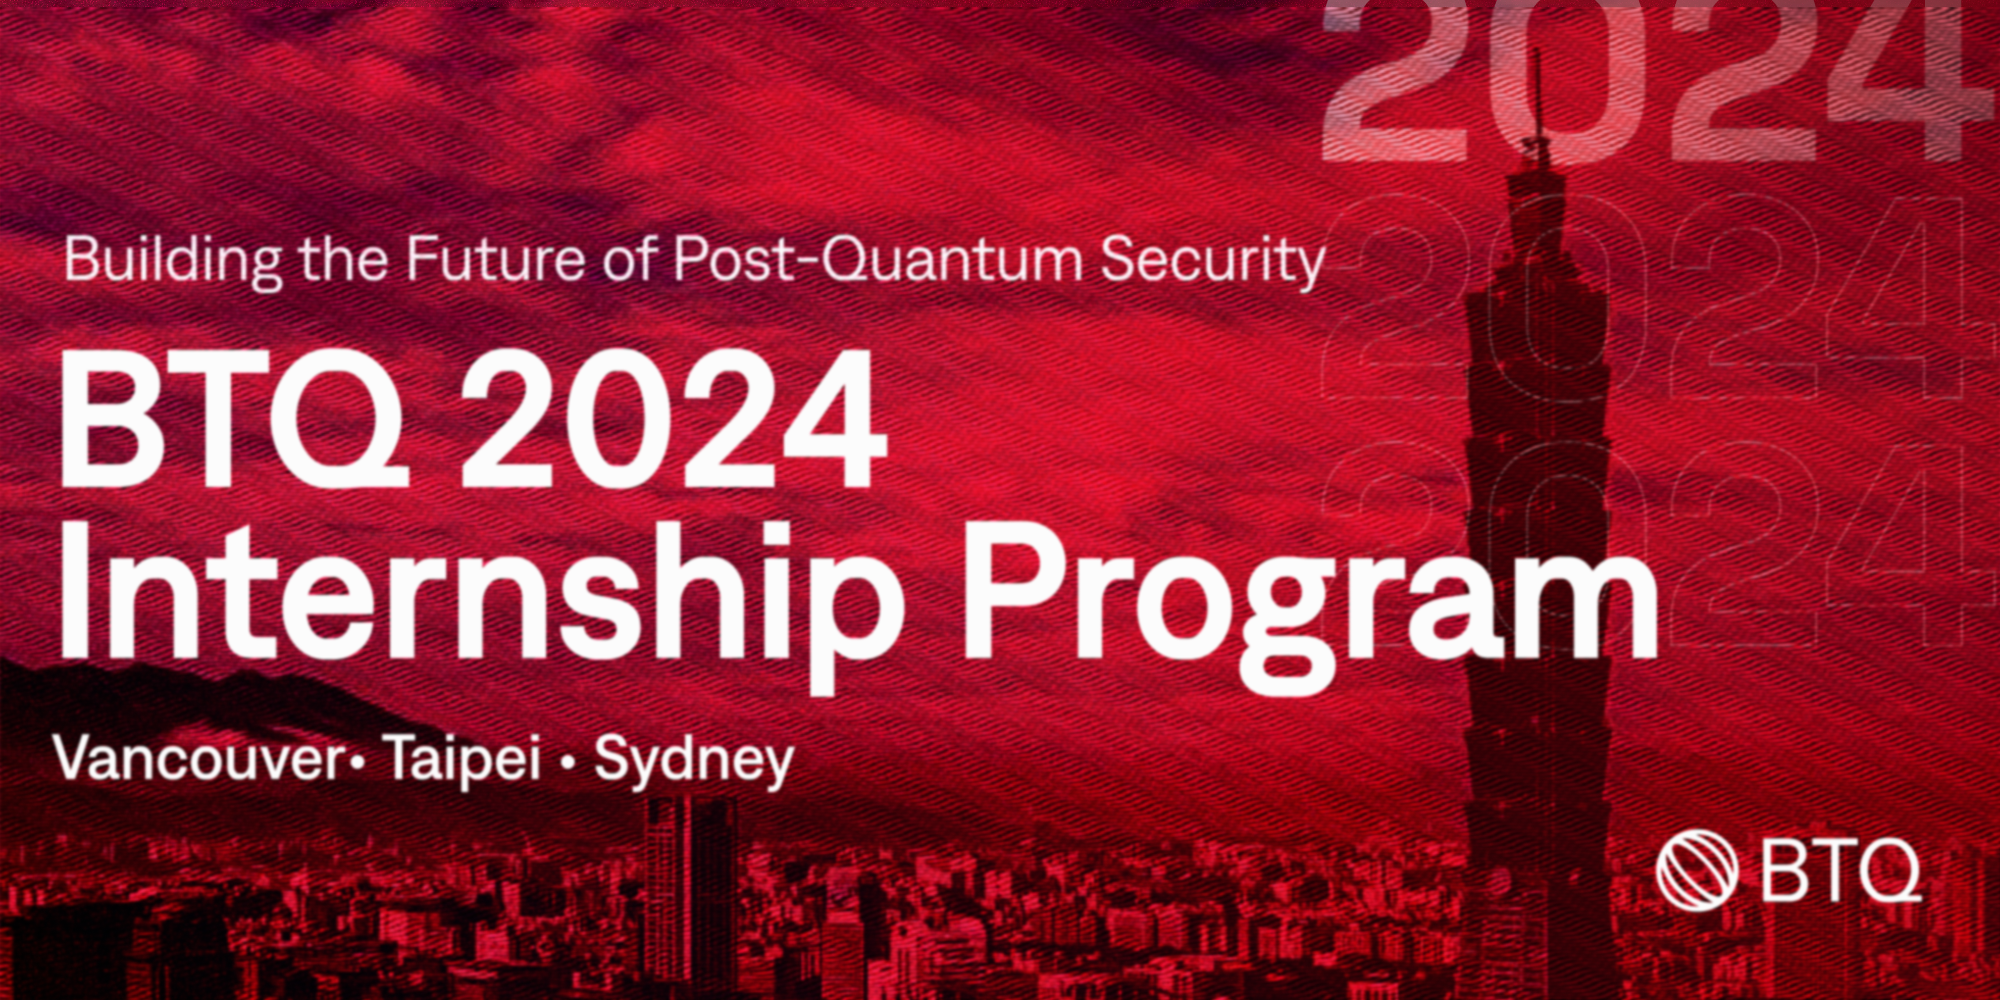 BTQ Technologies 2024 Internship Program: Building the Future of Post-Quantum Security